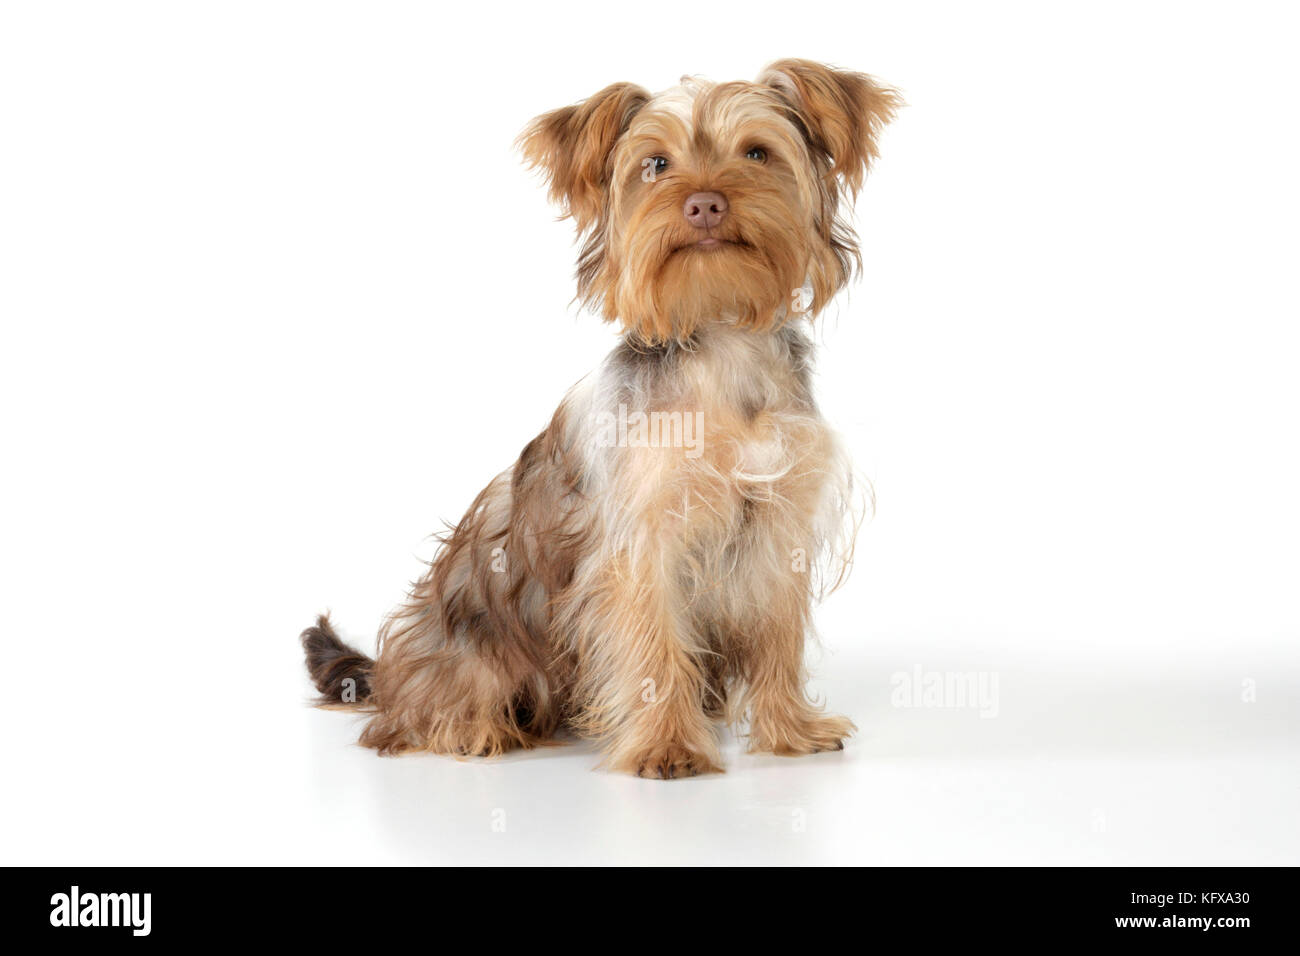 Hund-x Yorkie Pudel, (yoodle oder Yorkie poo). Überqueren sie die Rasse Pudel und Yorkshire Terrier. Stockfoto